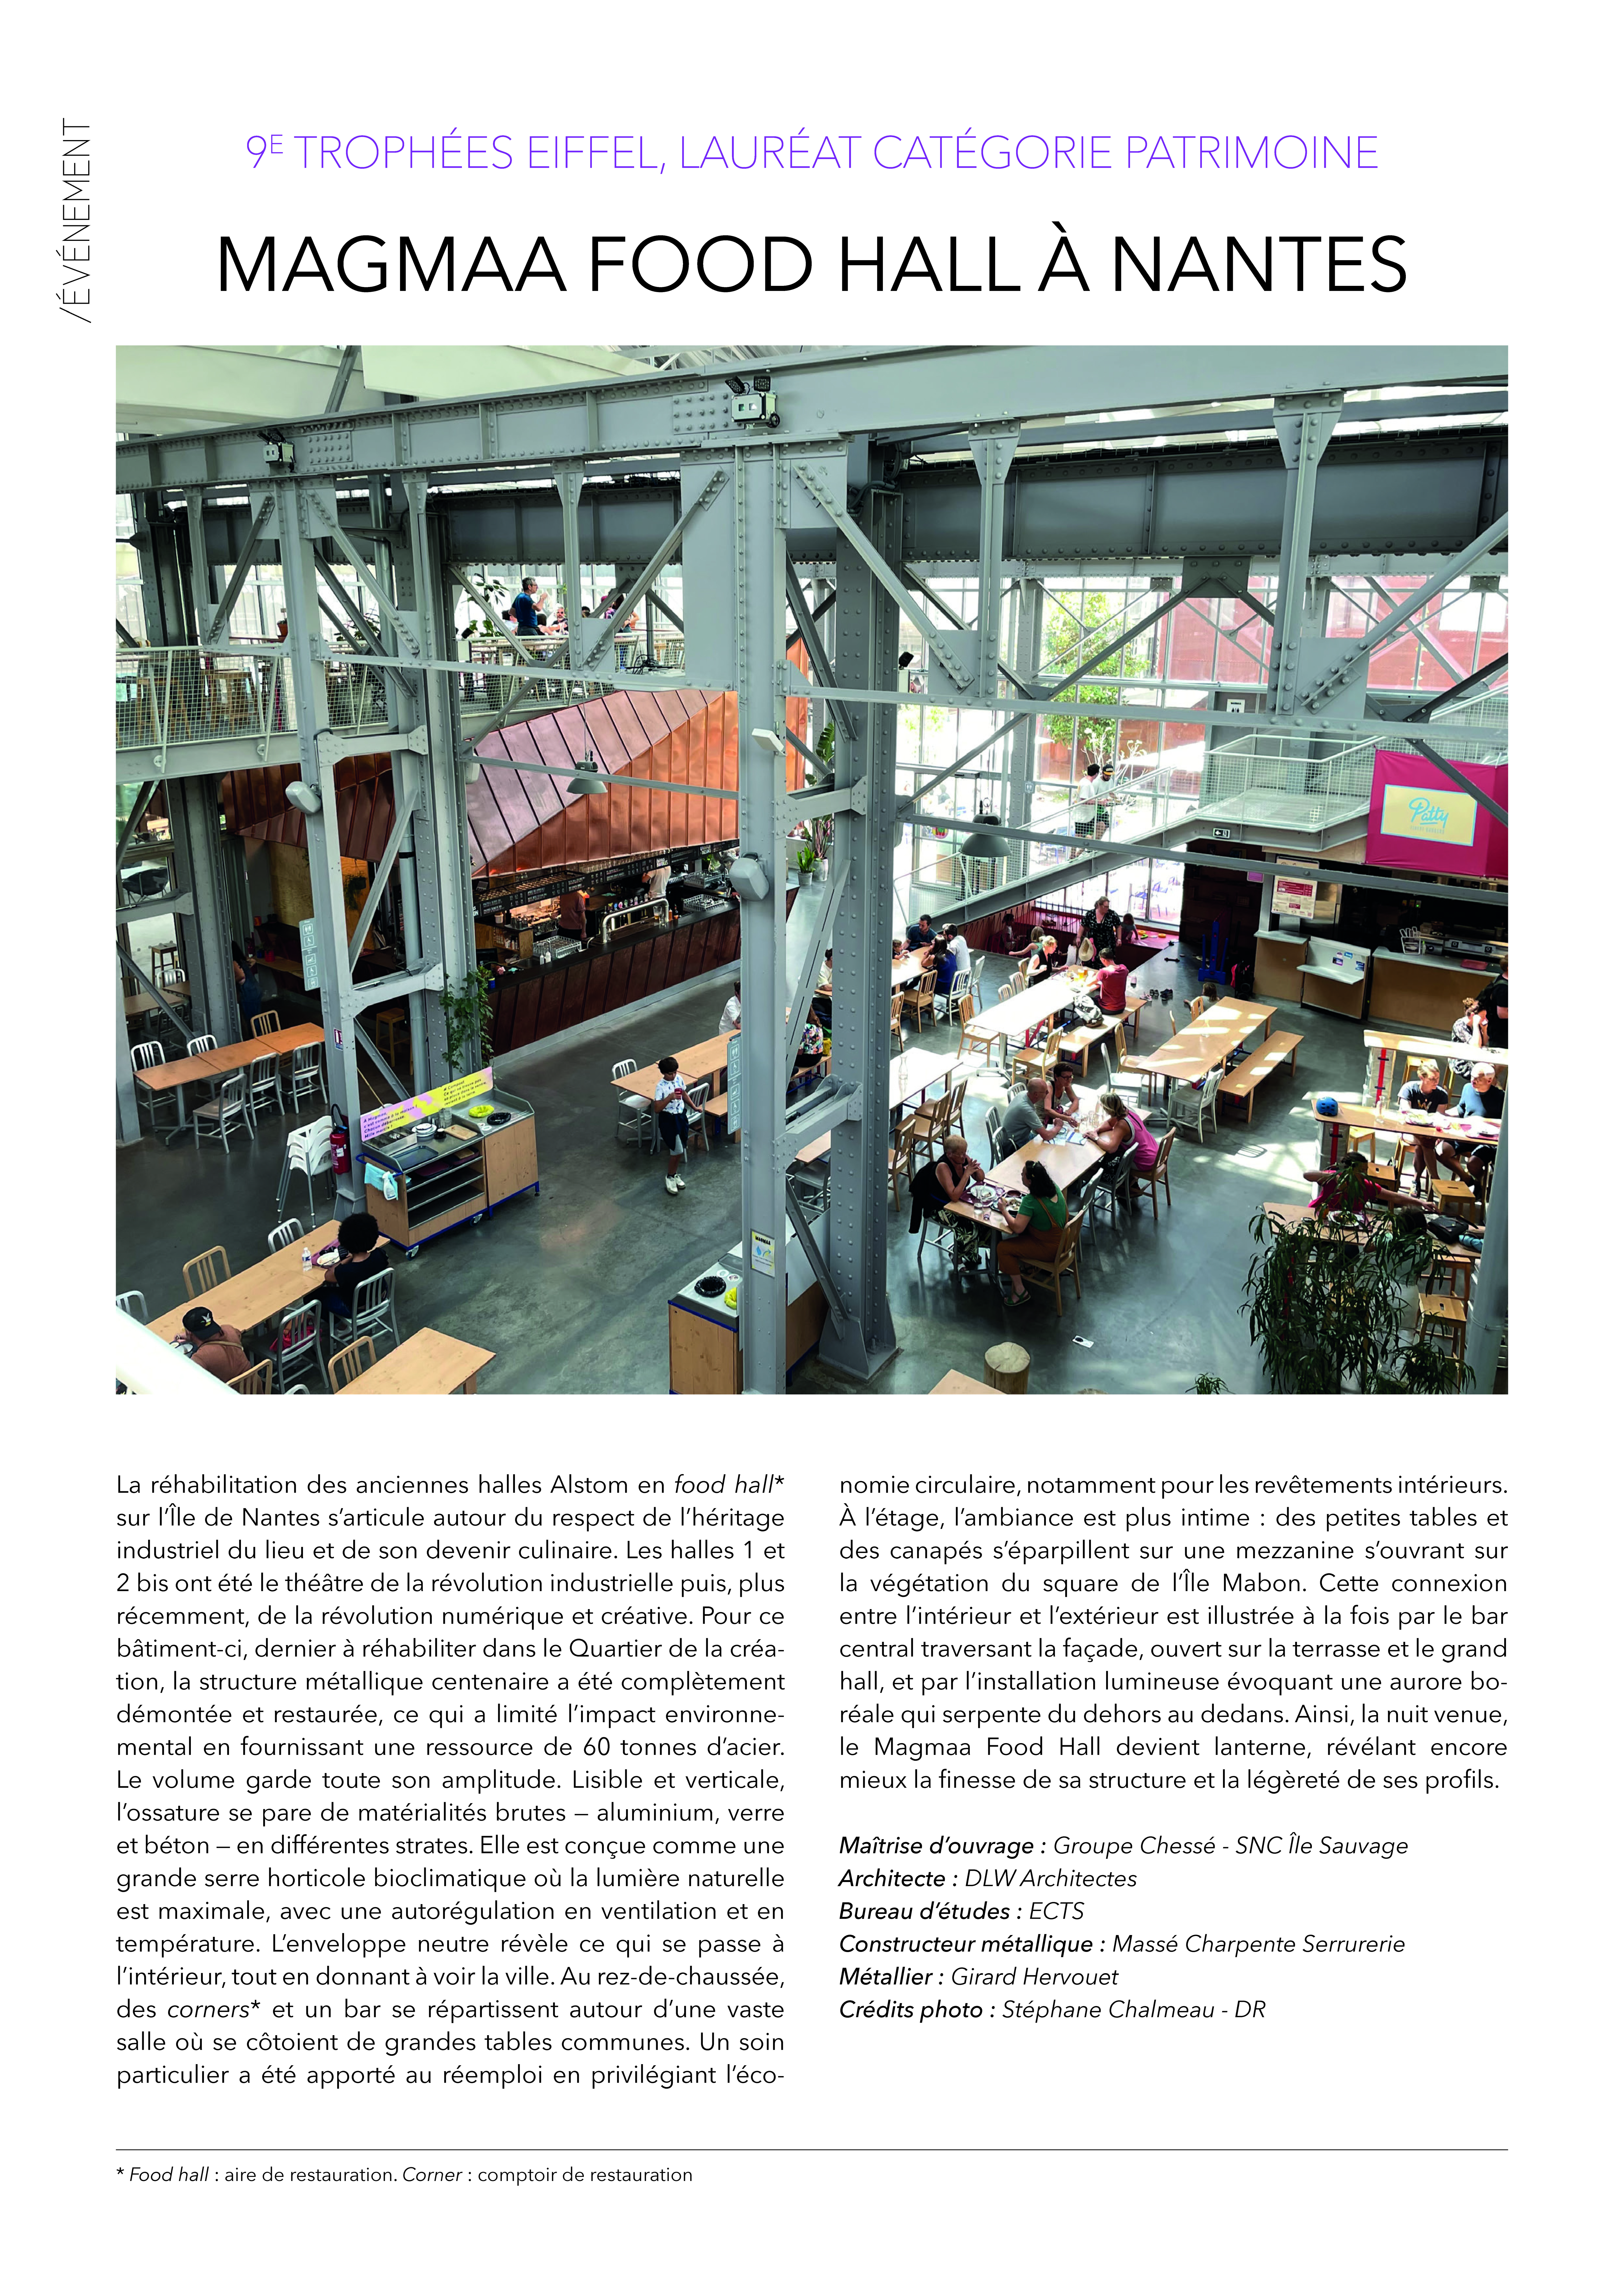 agence d'architecture DLW : projet de réhabilitation des halles Alstom 1 et 2 bis en food hall Magmaa à Nantes